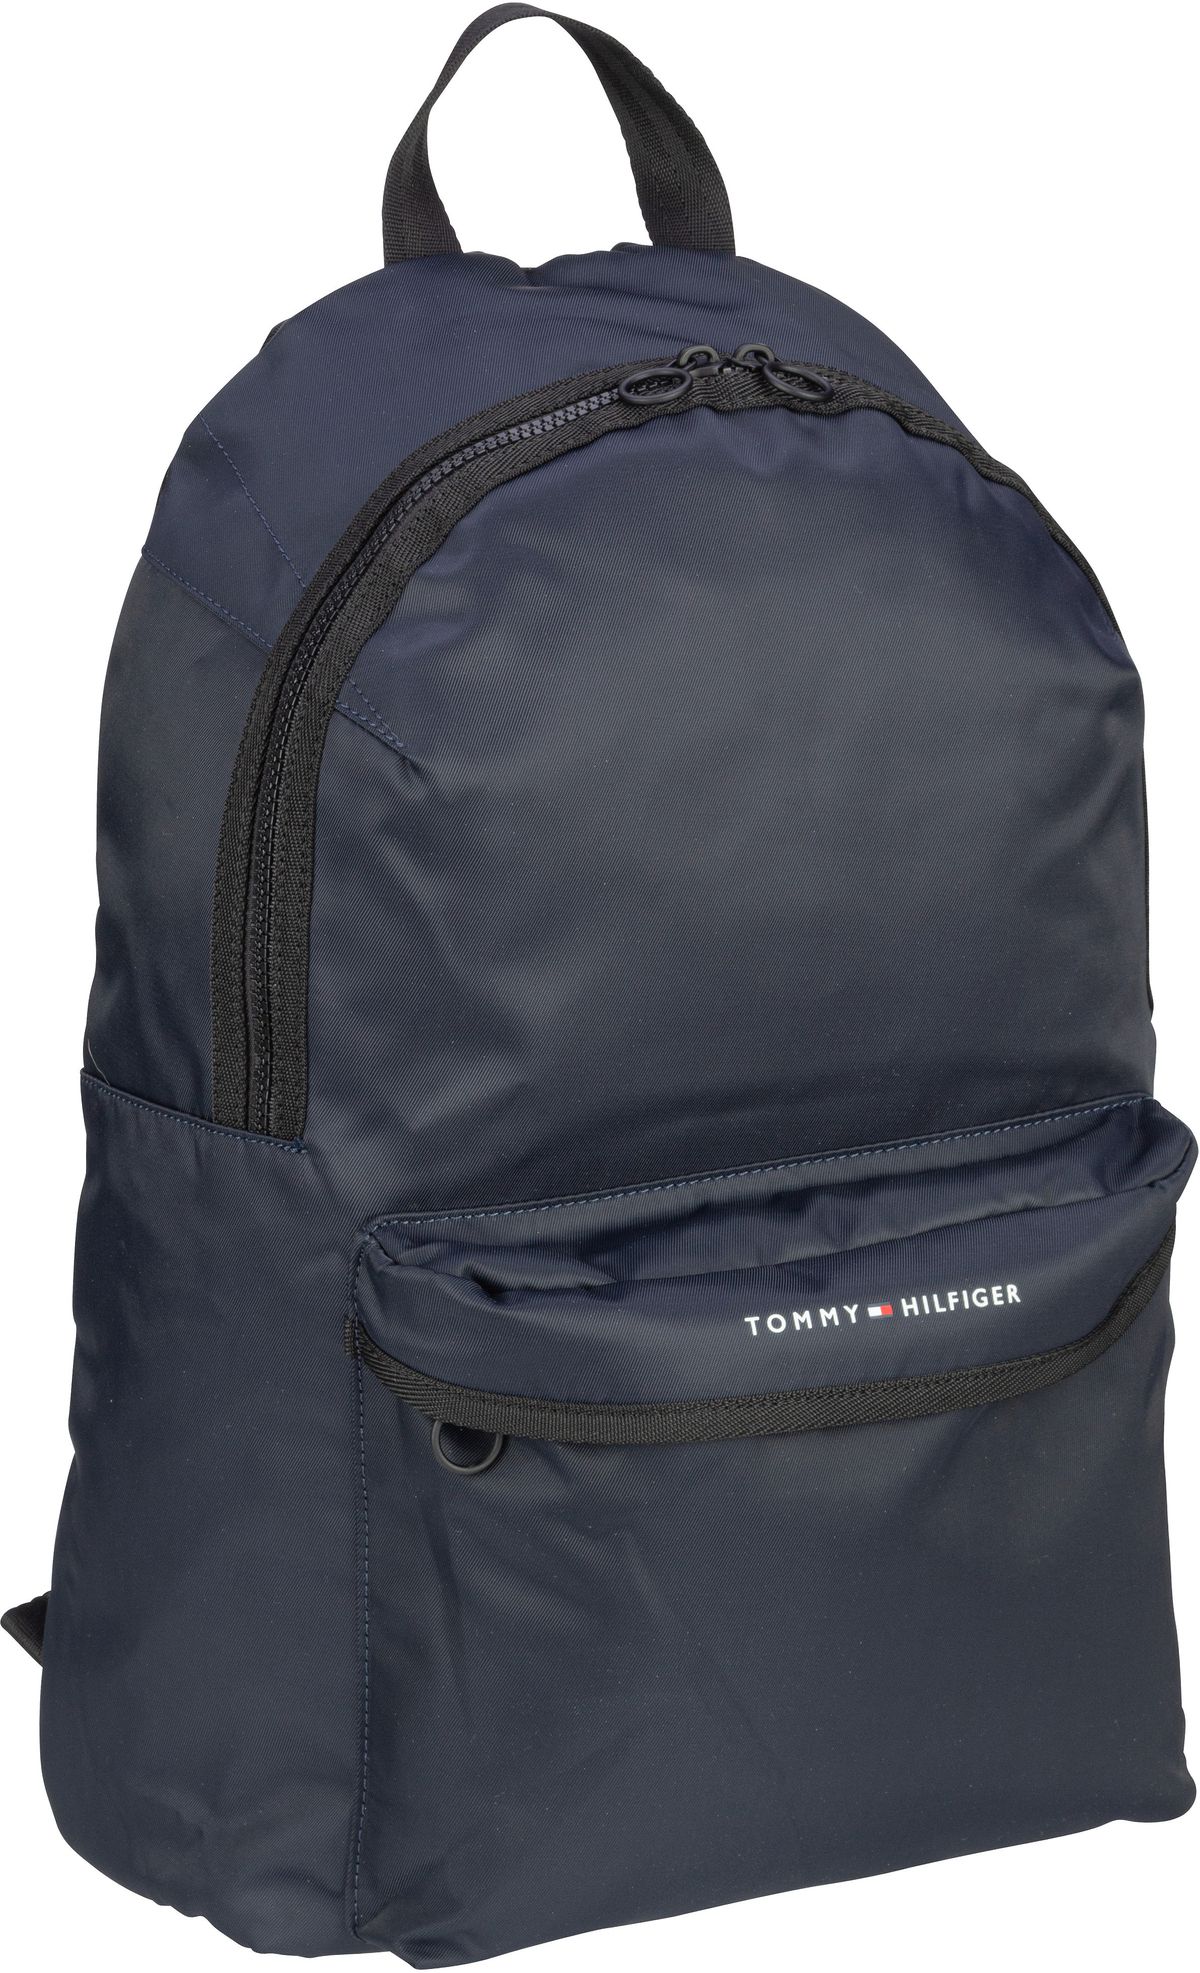 tommy hilfiger -  Rucksack / Daypack TH Skyline Backpack SP23 Space Blue (16.6 Liter)